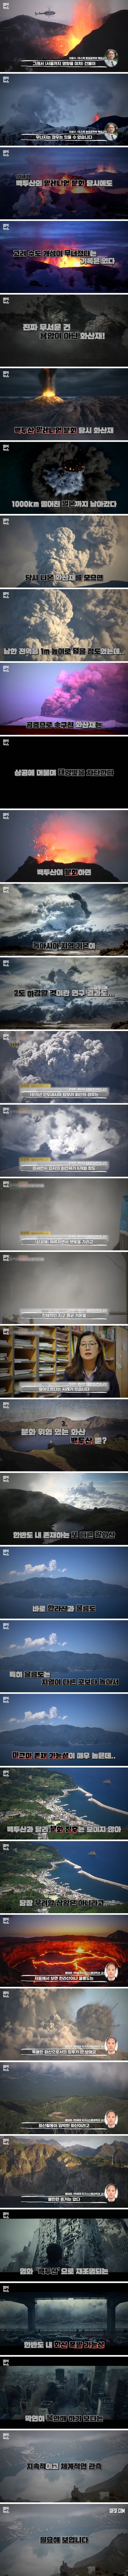 백두산 폭발하면 서울 강남이 쑥대밭 영화 속 장면 팩트체크 (2).jpg